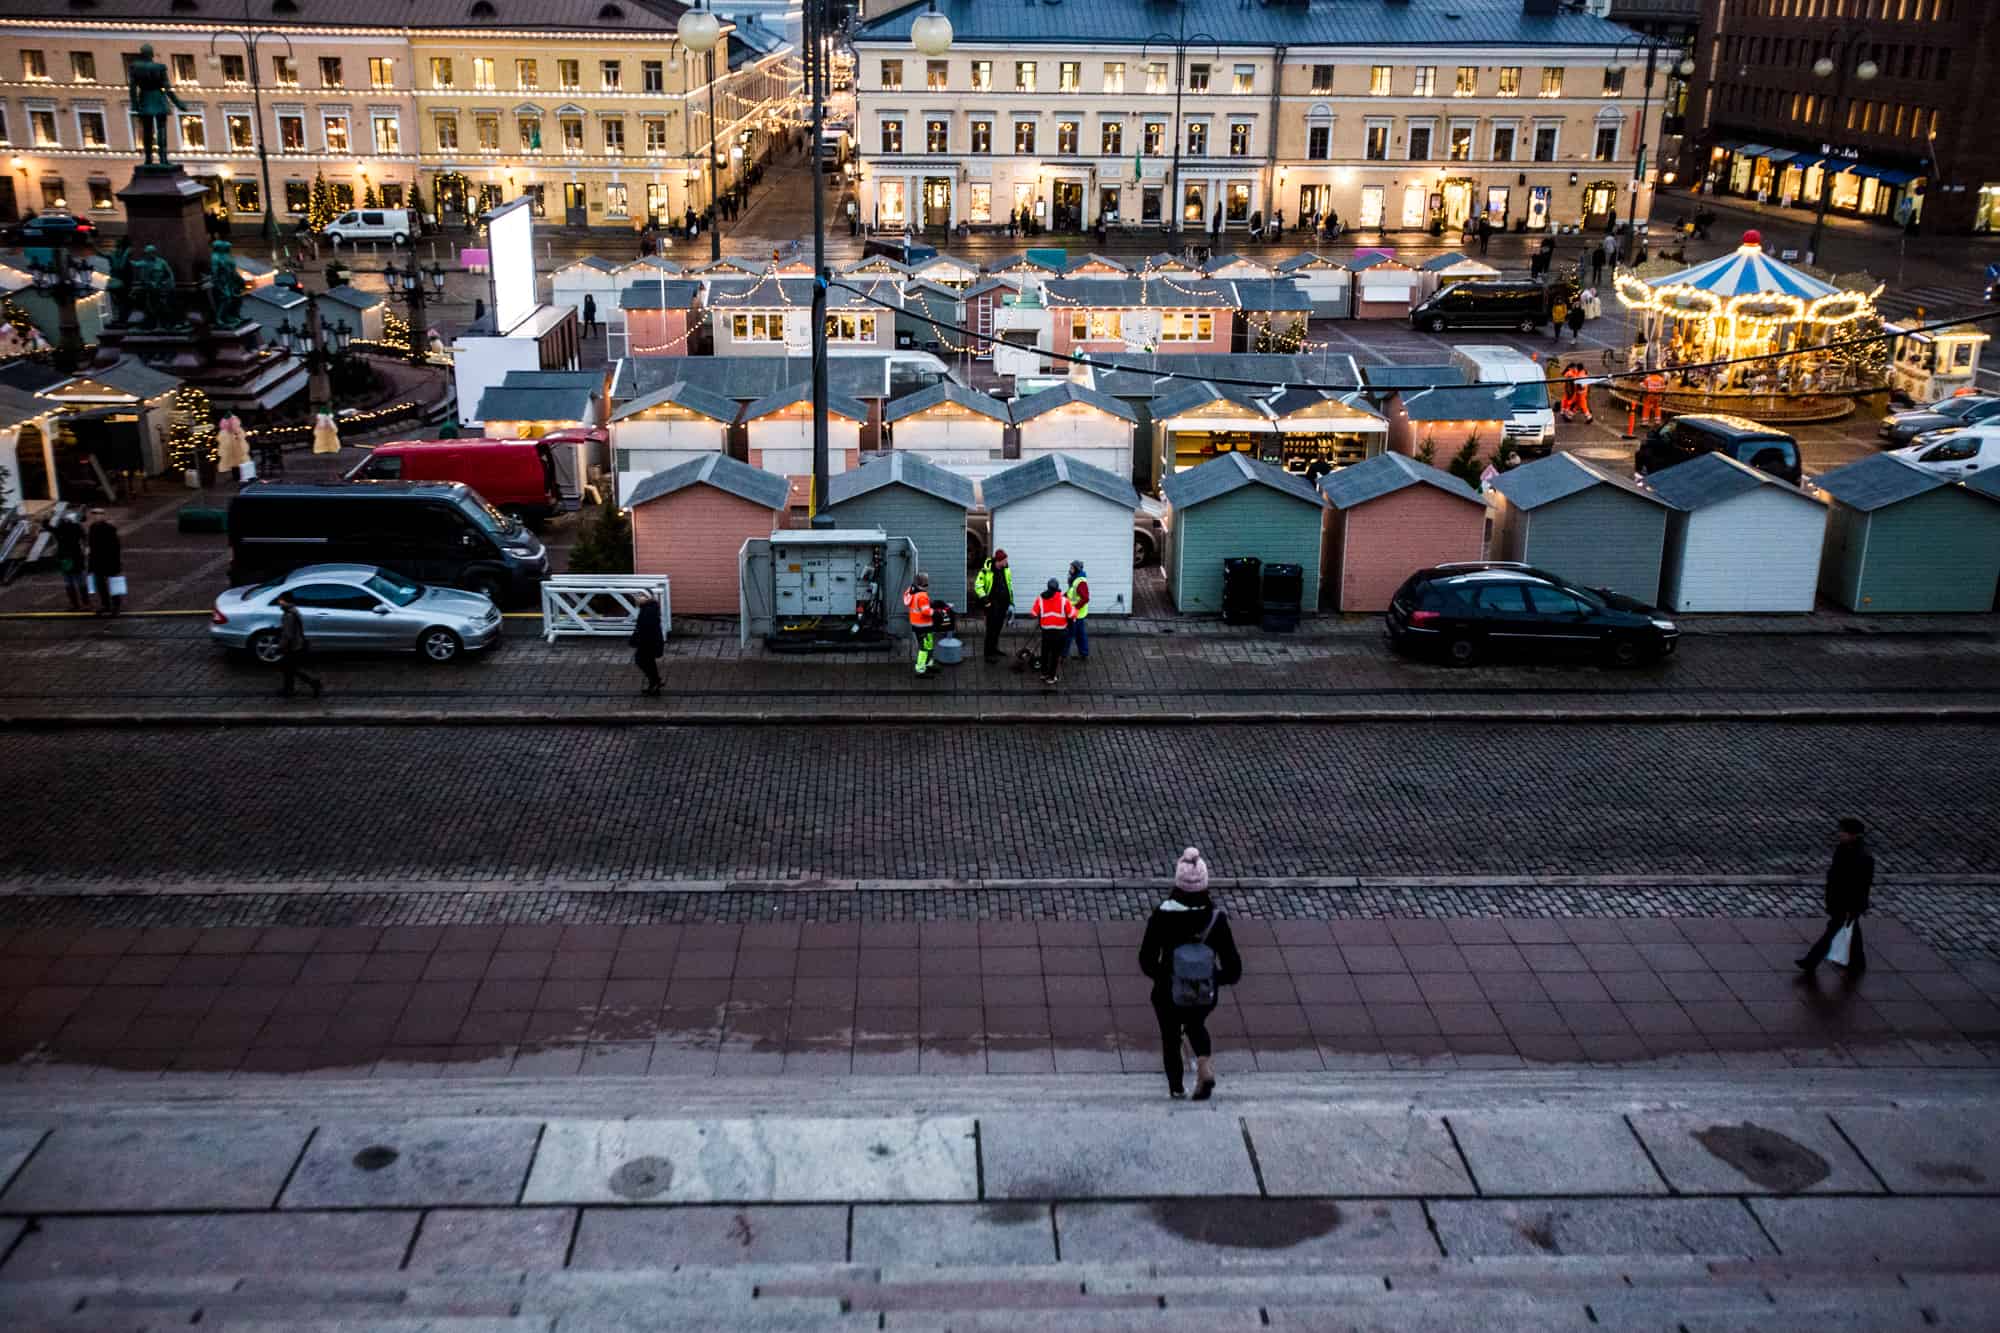 Market Square, Helsinki